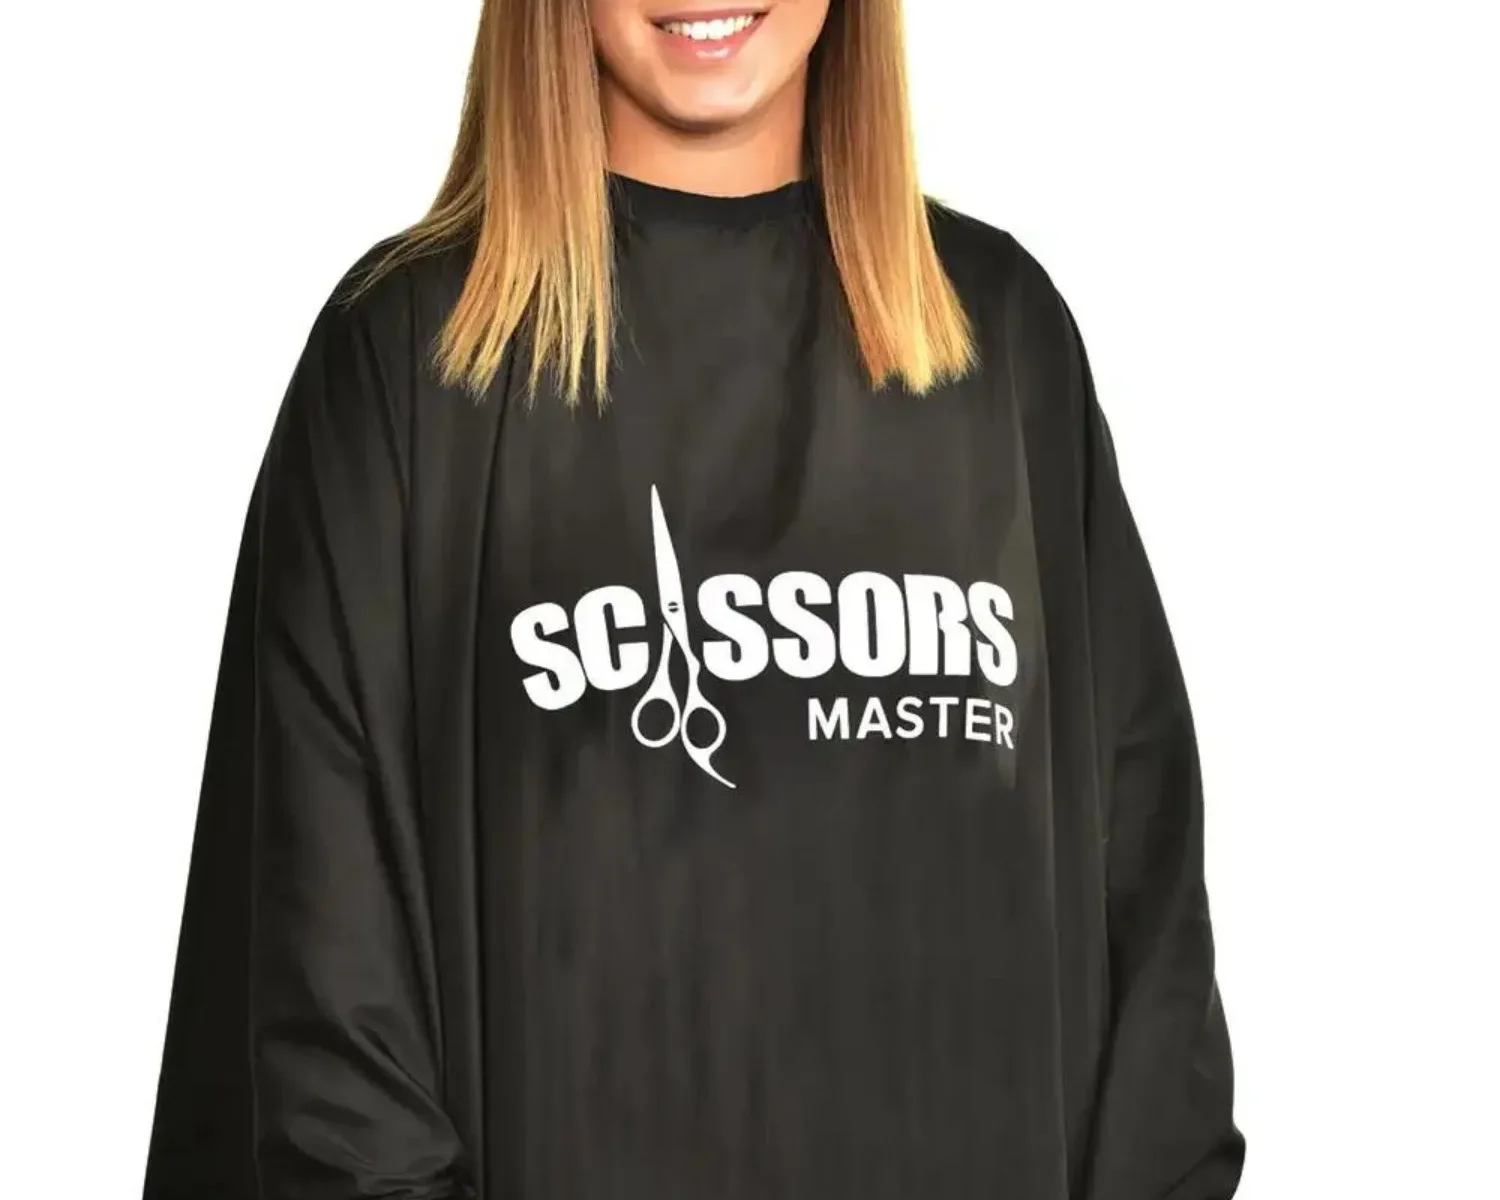 Femme qui porte une cape de coupe signé Scissors Master